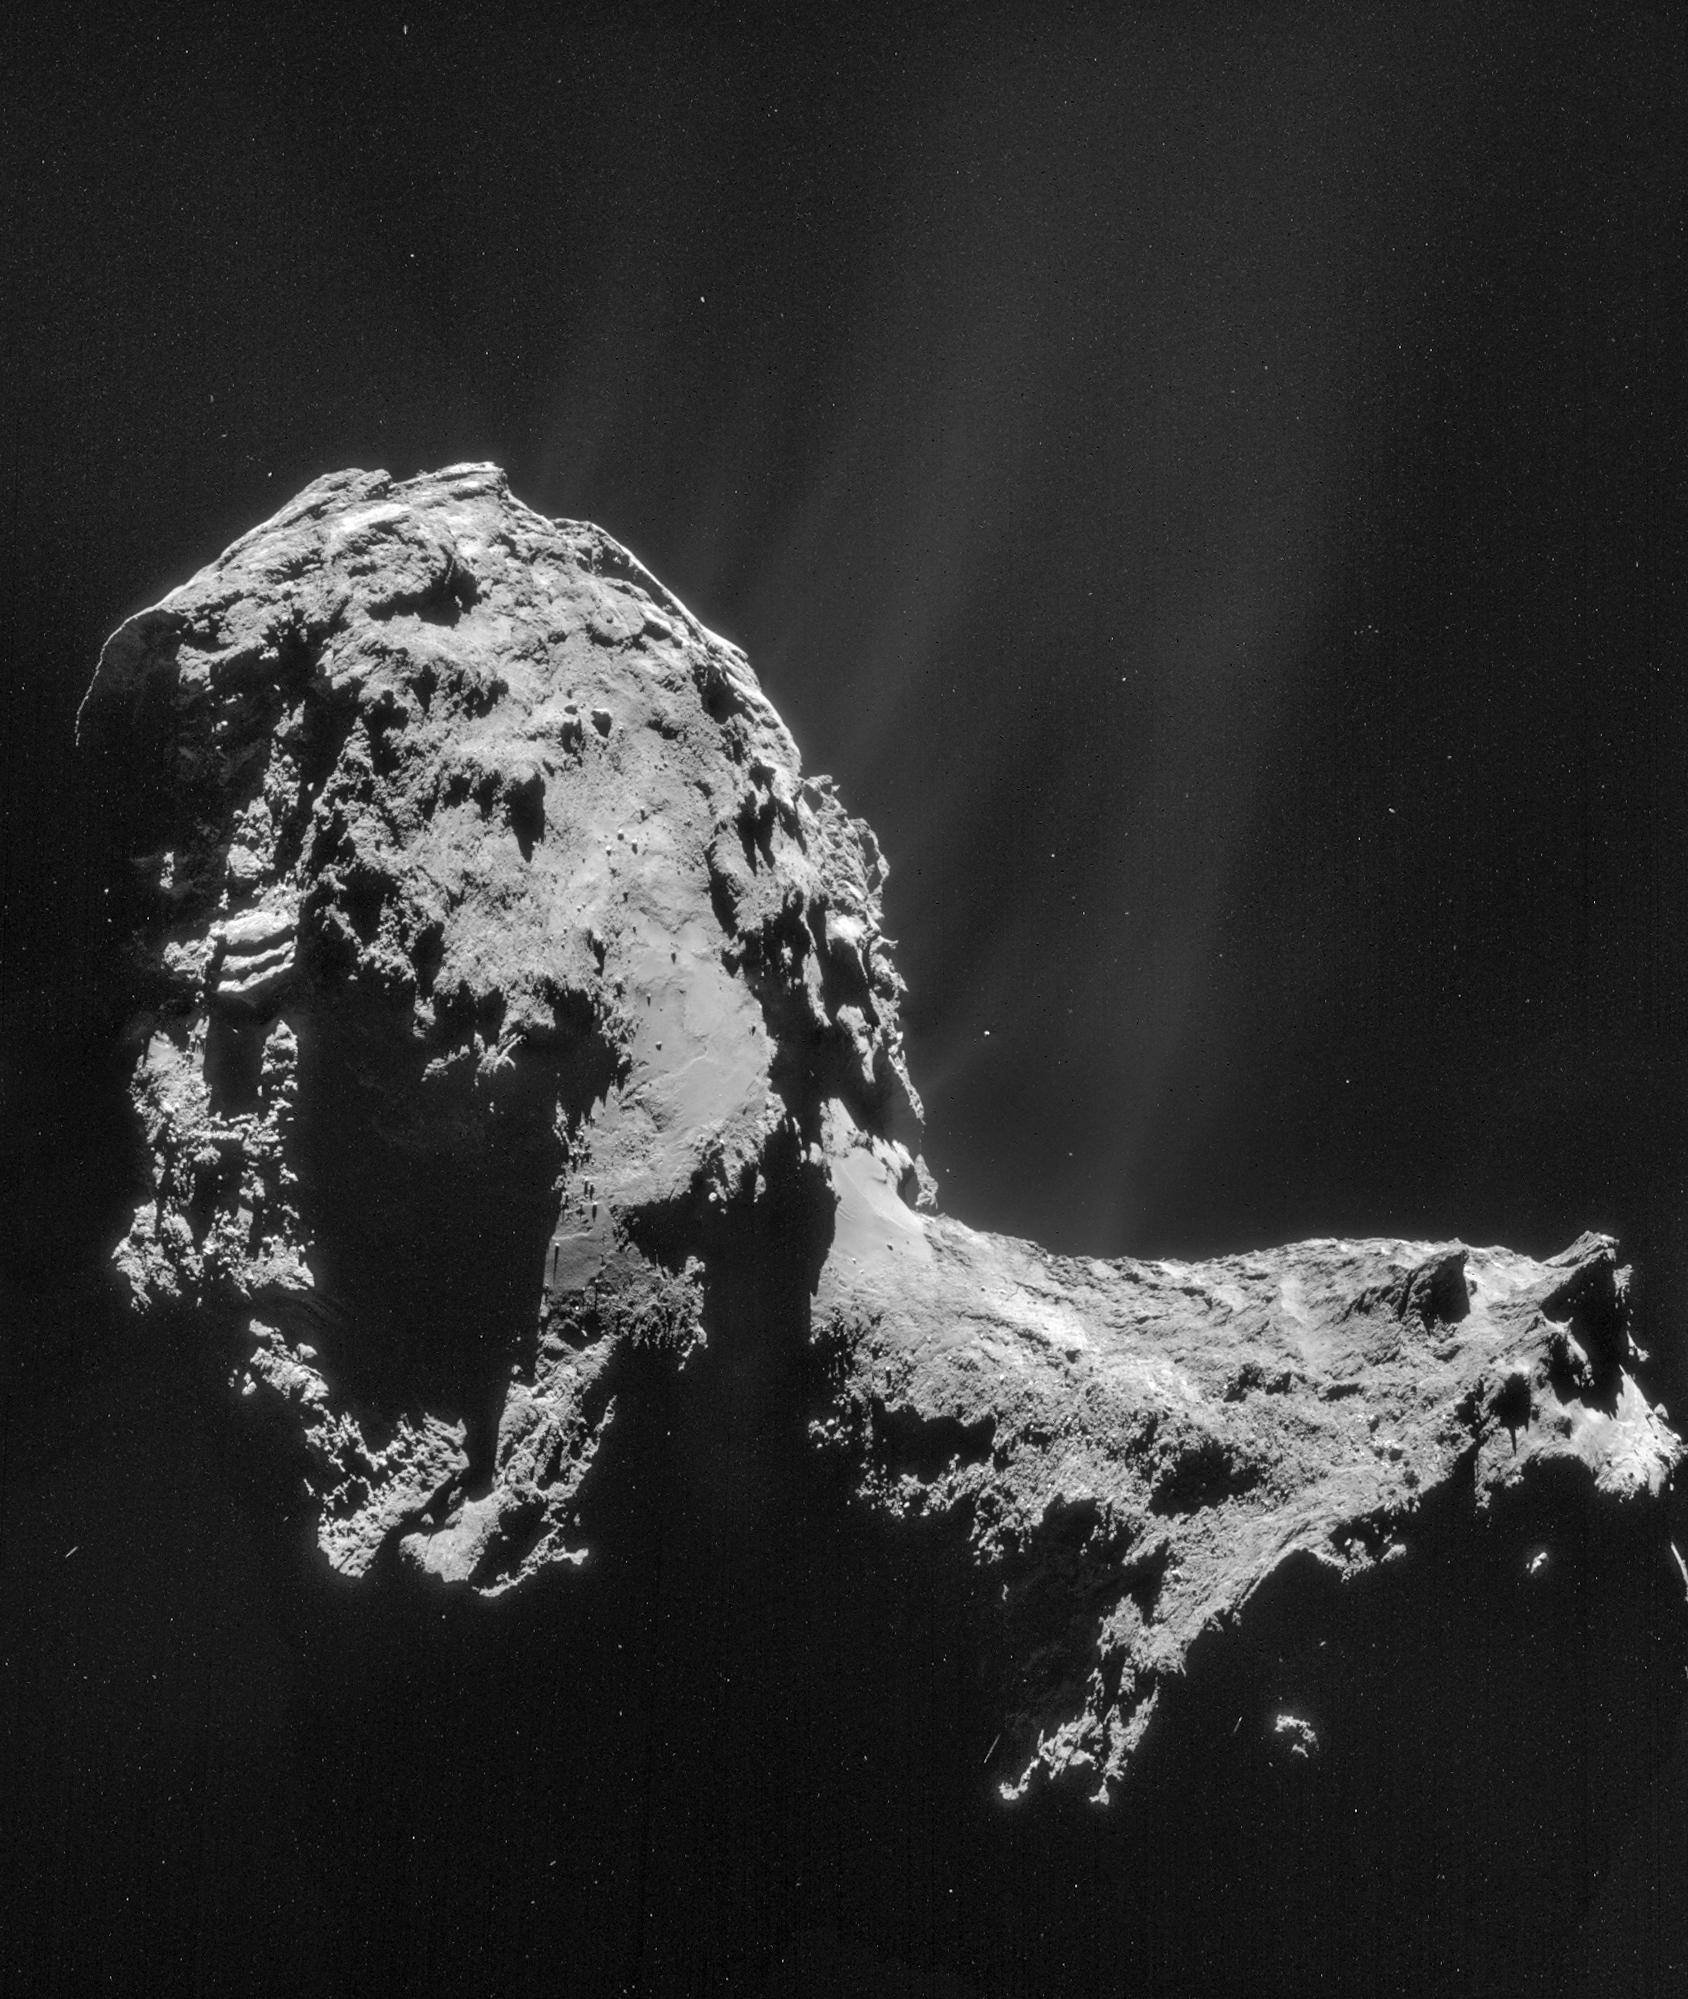 comet 67p